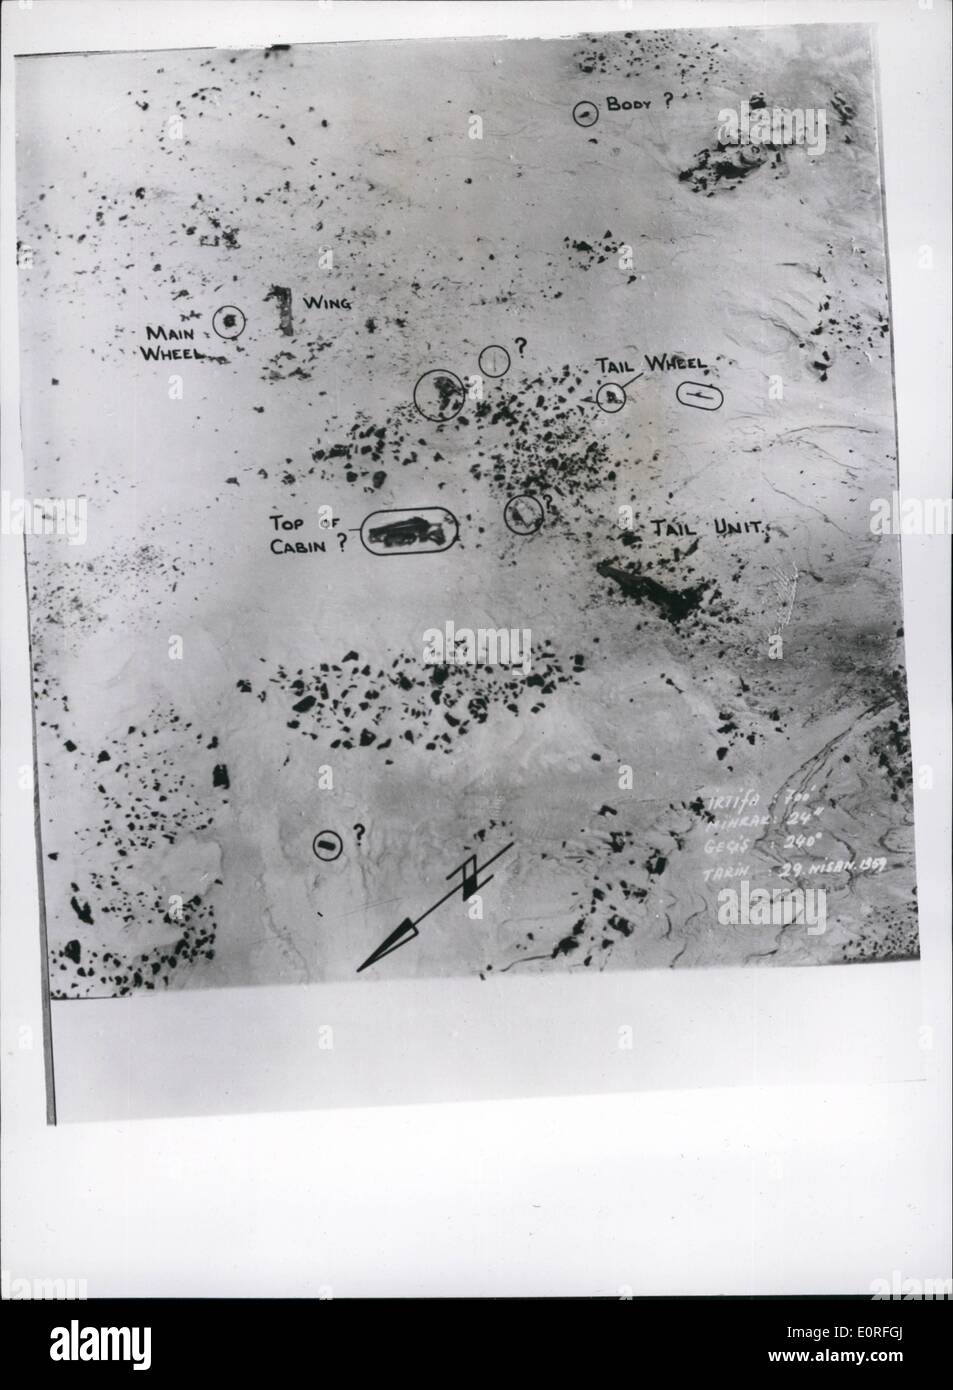 Mai 05, 1959 - La photo officielle Crown Copyright réservés : l'équipe de secours en montagne R.A.F Atteindre l'aéronef accidenté en Turquie : le British Avro Tudor cargo qui s'est écrasé près du sommet du mont Subhan (14 434 pieds) a été atteint par une équipe de secours en montagne R.A.F lat dimanche comme ils ont fait leur chemin dangereux à l'épave dans ce seul cadre de la Turquie orientale. L'avion, qui transportait des documents secrets pour le Rocket Range à Woomera, s'est écrasé le 23 avril. Douze corps ont été retrouvés dans l'avion accidenté , à deux qui sont soupçonnés d'avoir trouvé la mort d'exposition Banque D'Images